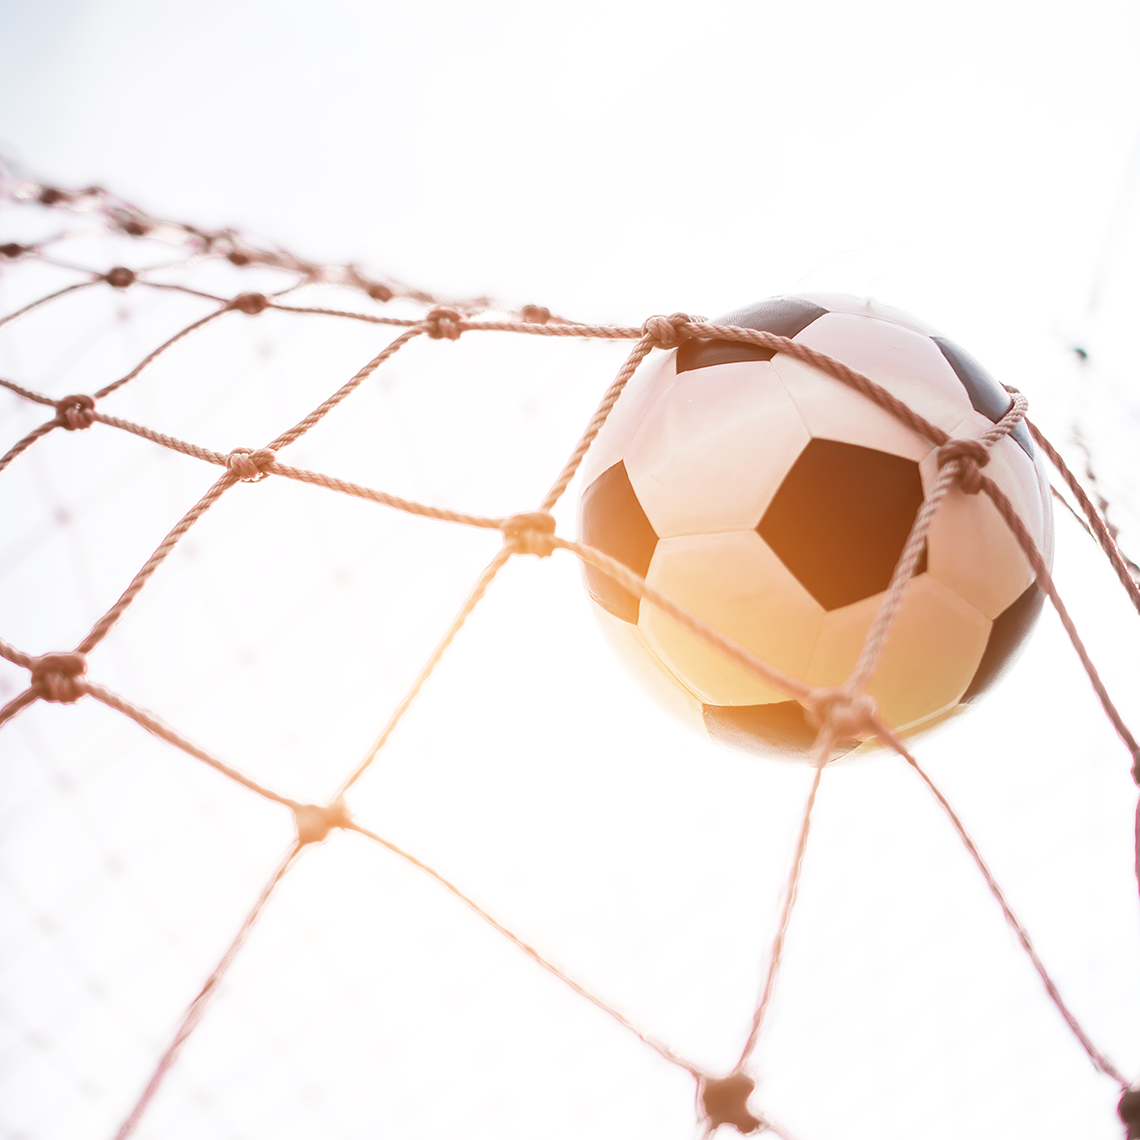 football (soccer ball) caught in a net